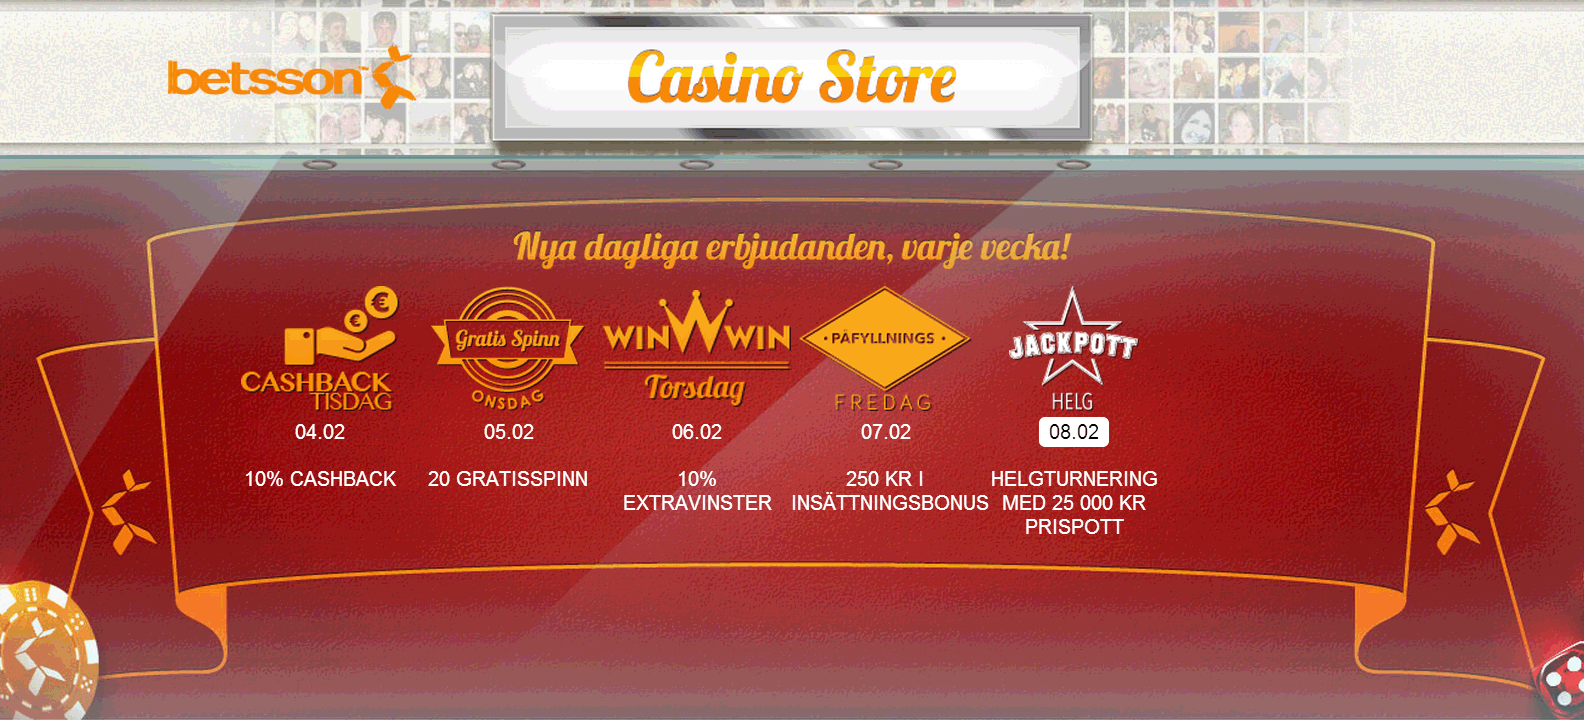 casinoturnering